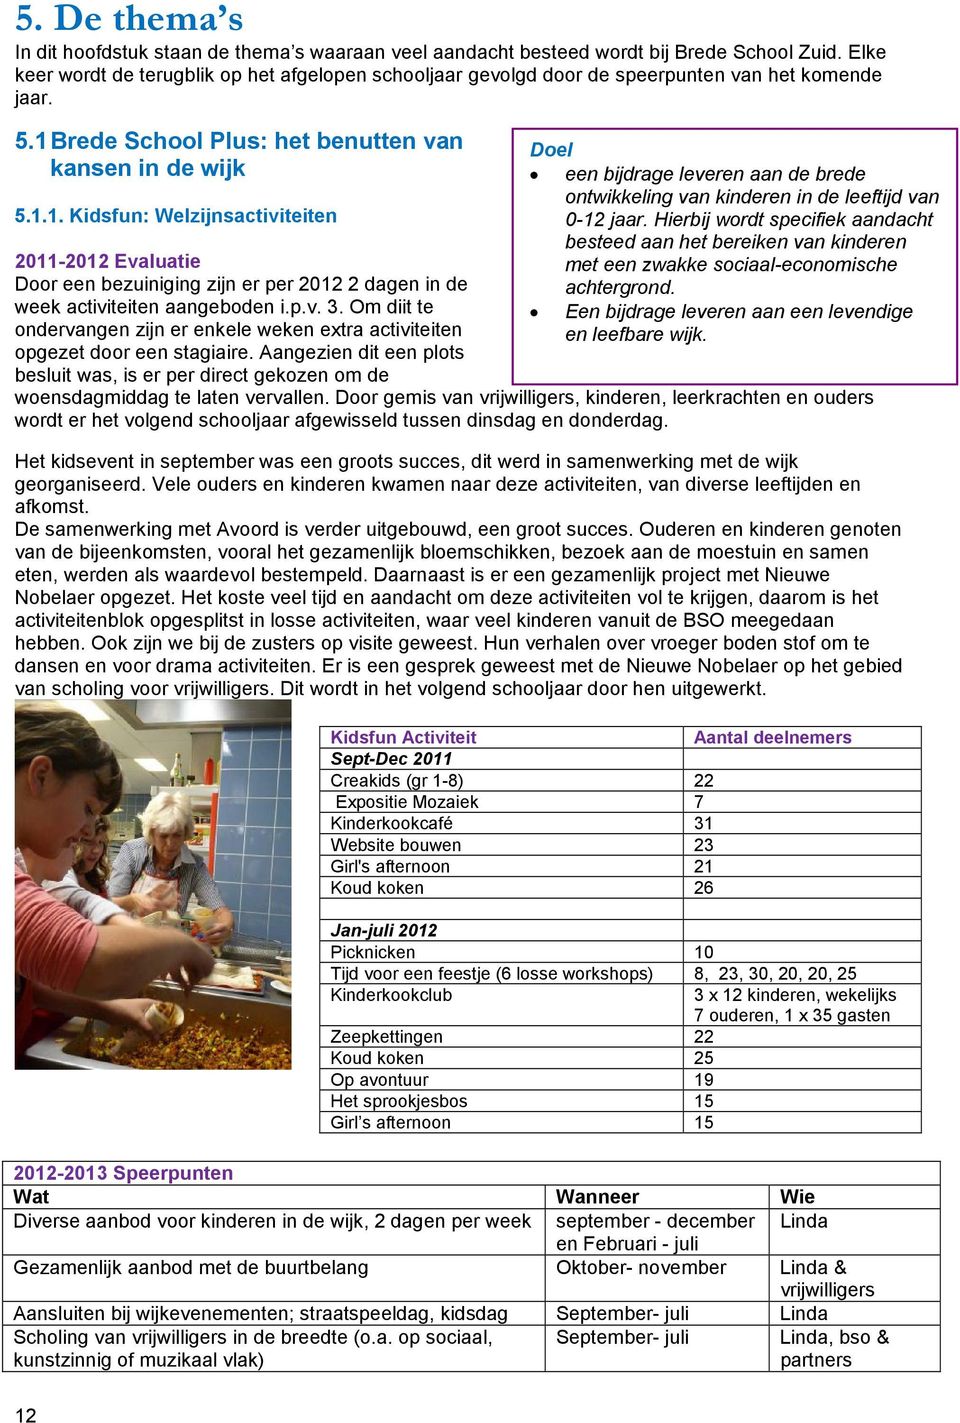 Brede School Plus: het benutten van kansen in de wijk 5.1.1. Kidsfun: Welzijnsactiviteiten 2011-2012 Evaluatie Door een bezuiniging zijn er per 2012 2 dagen in de week activiteiten aangeboden i.p.v. 3.